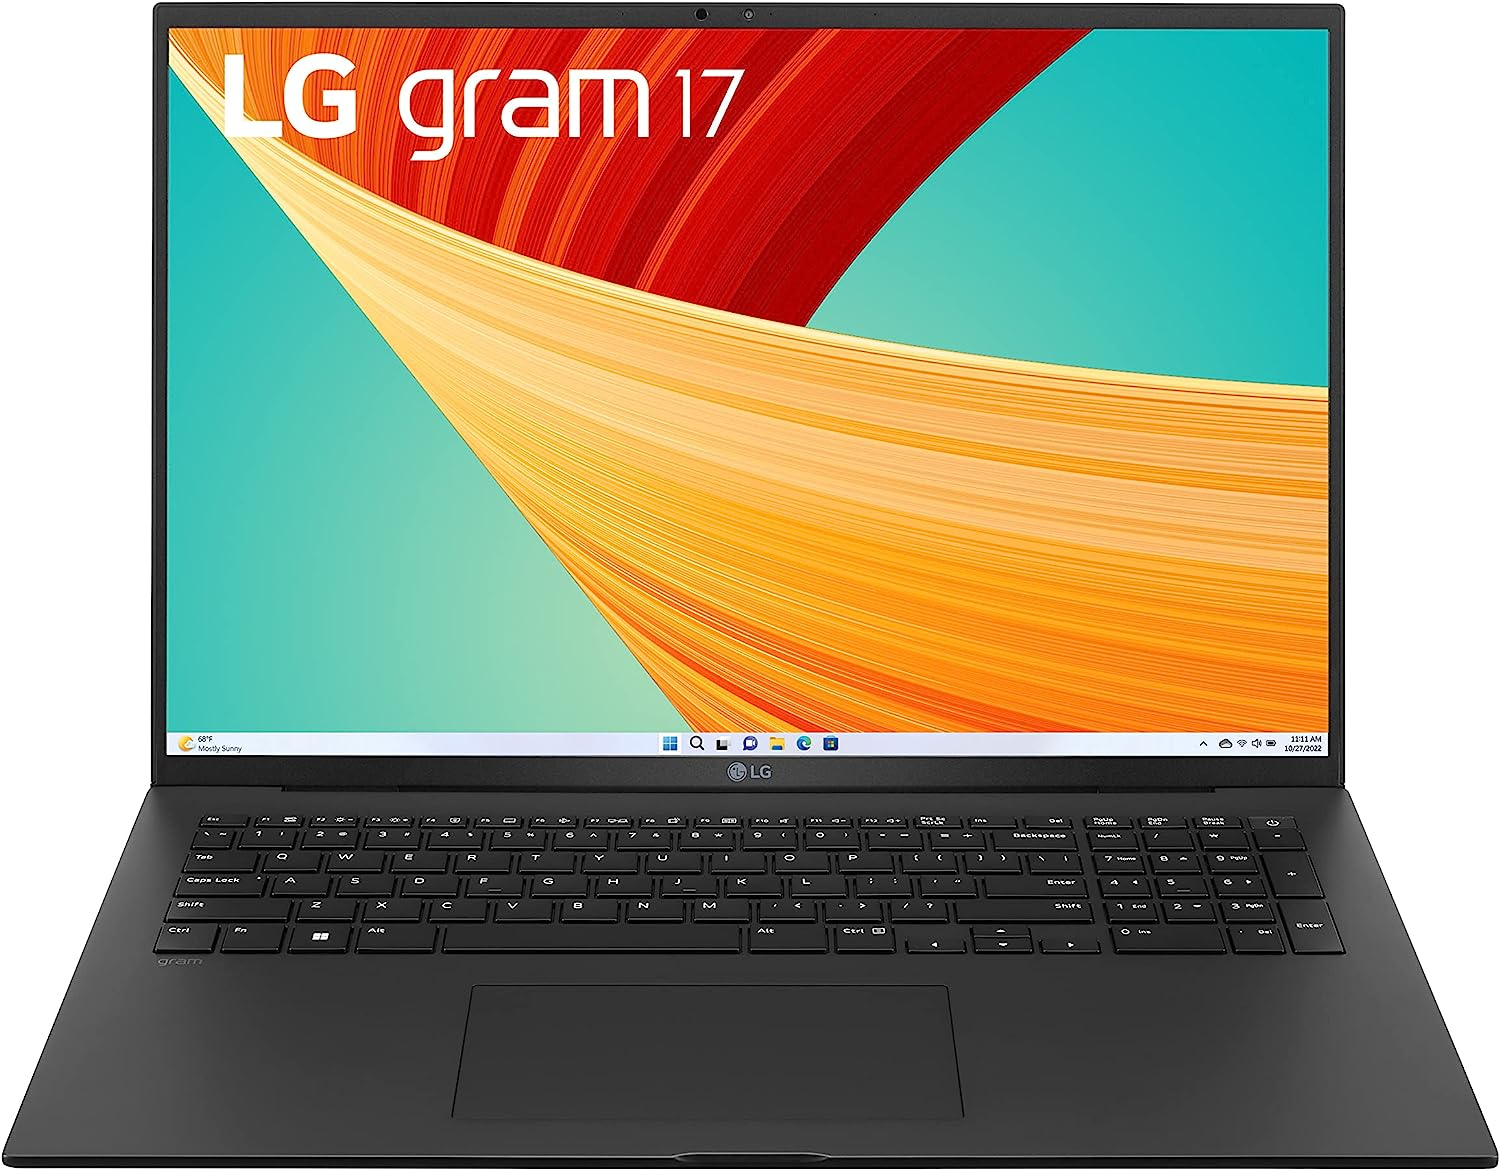 LG gram 17” Lightweight Laptop